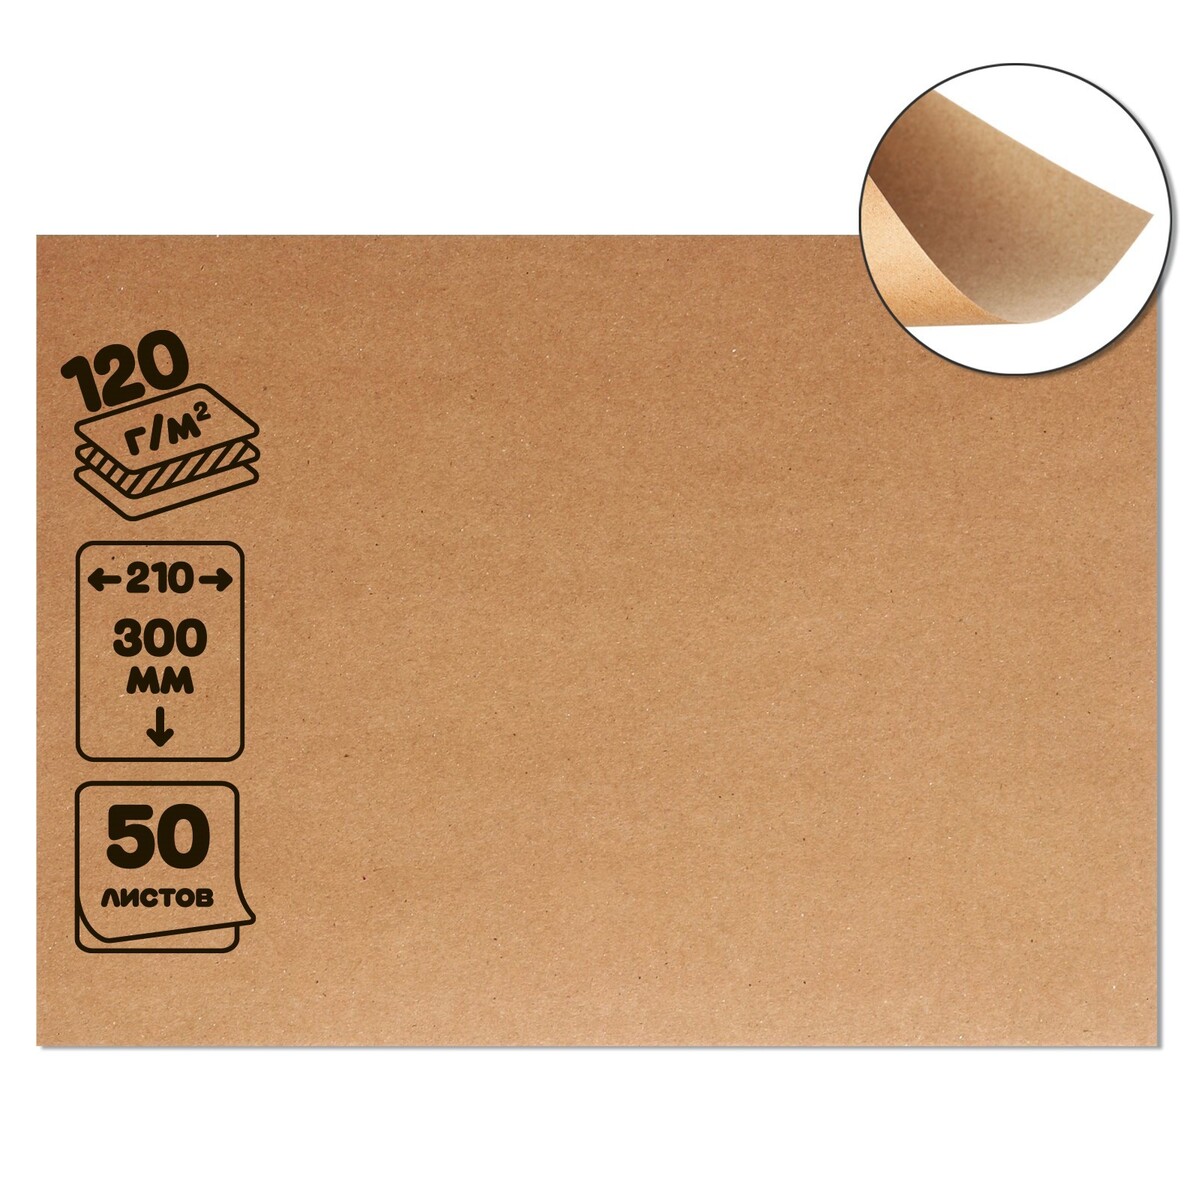 Крафт-бумага, 210 х 300 мм, 120 г/м2, набор 50 листов, коричневая/серая набор круглых коробок 5 в 1 30 х 30 х 17 15 х 15 х 10 см крафт